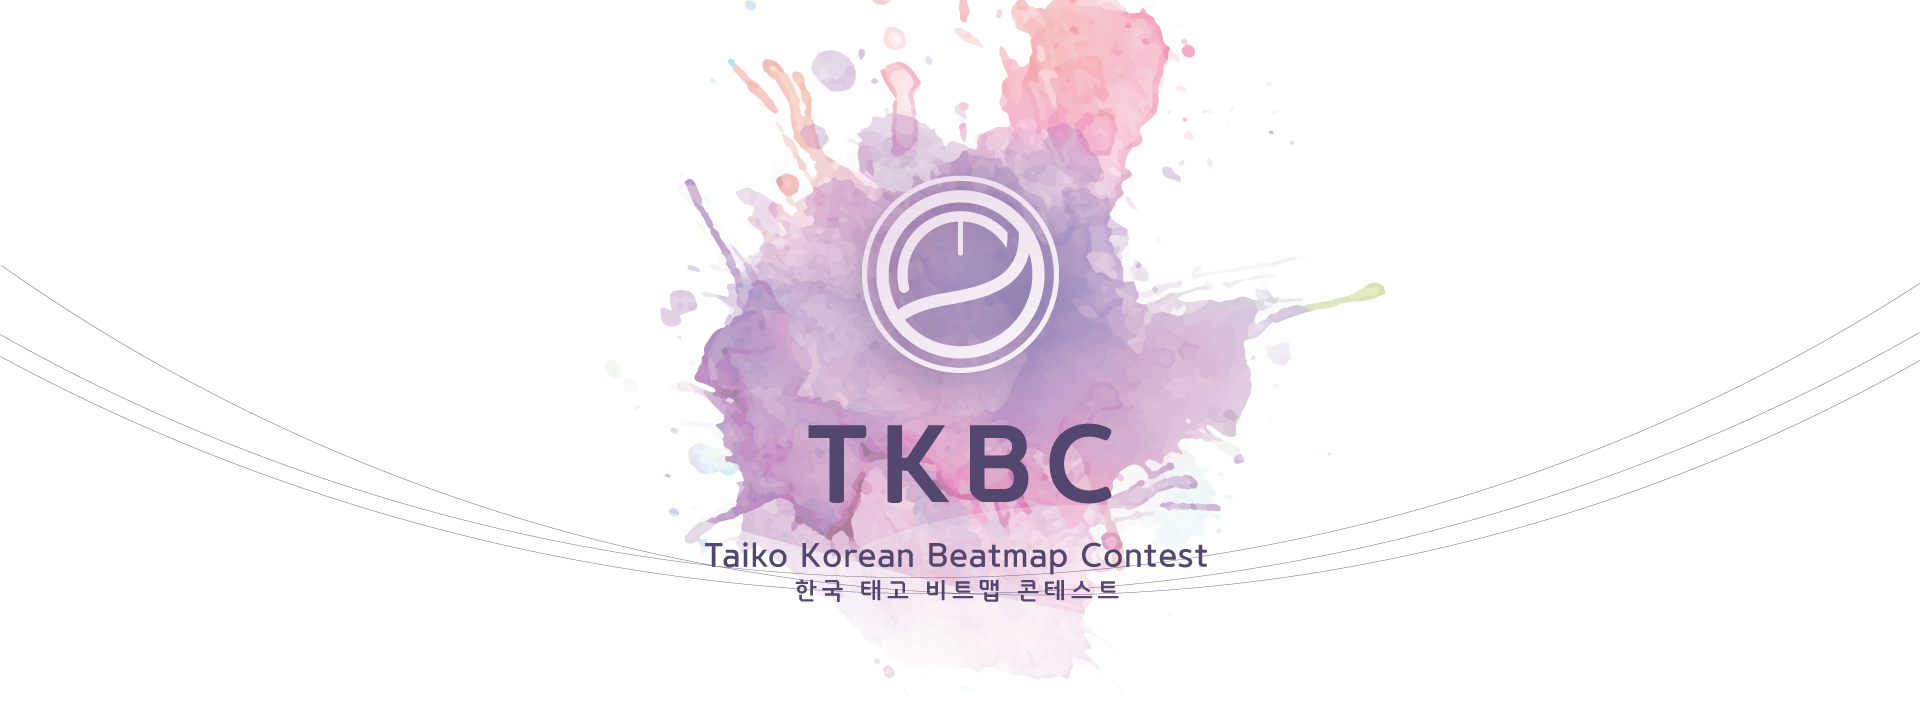 TKBC1 Logo